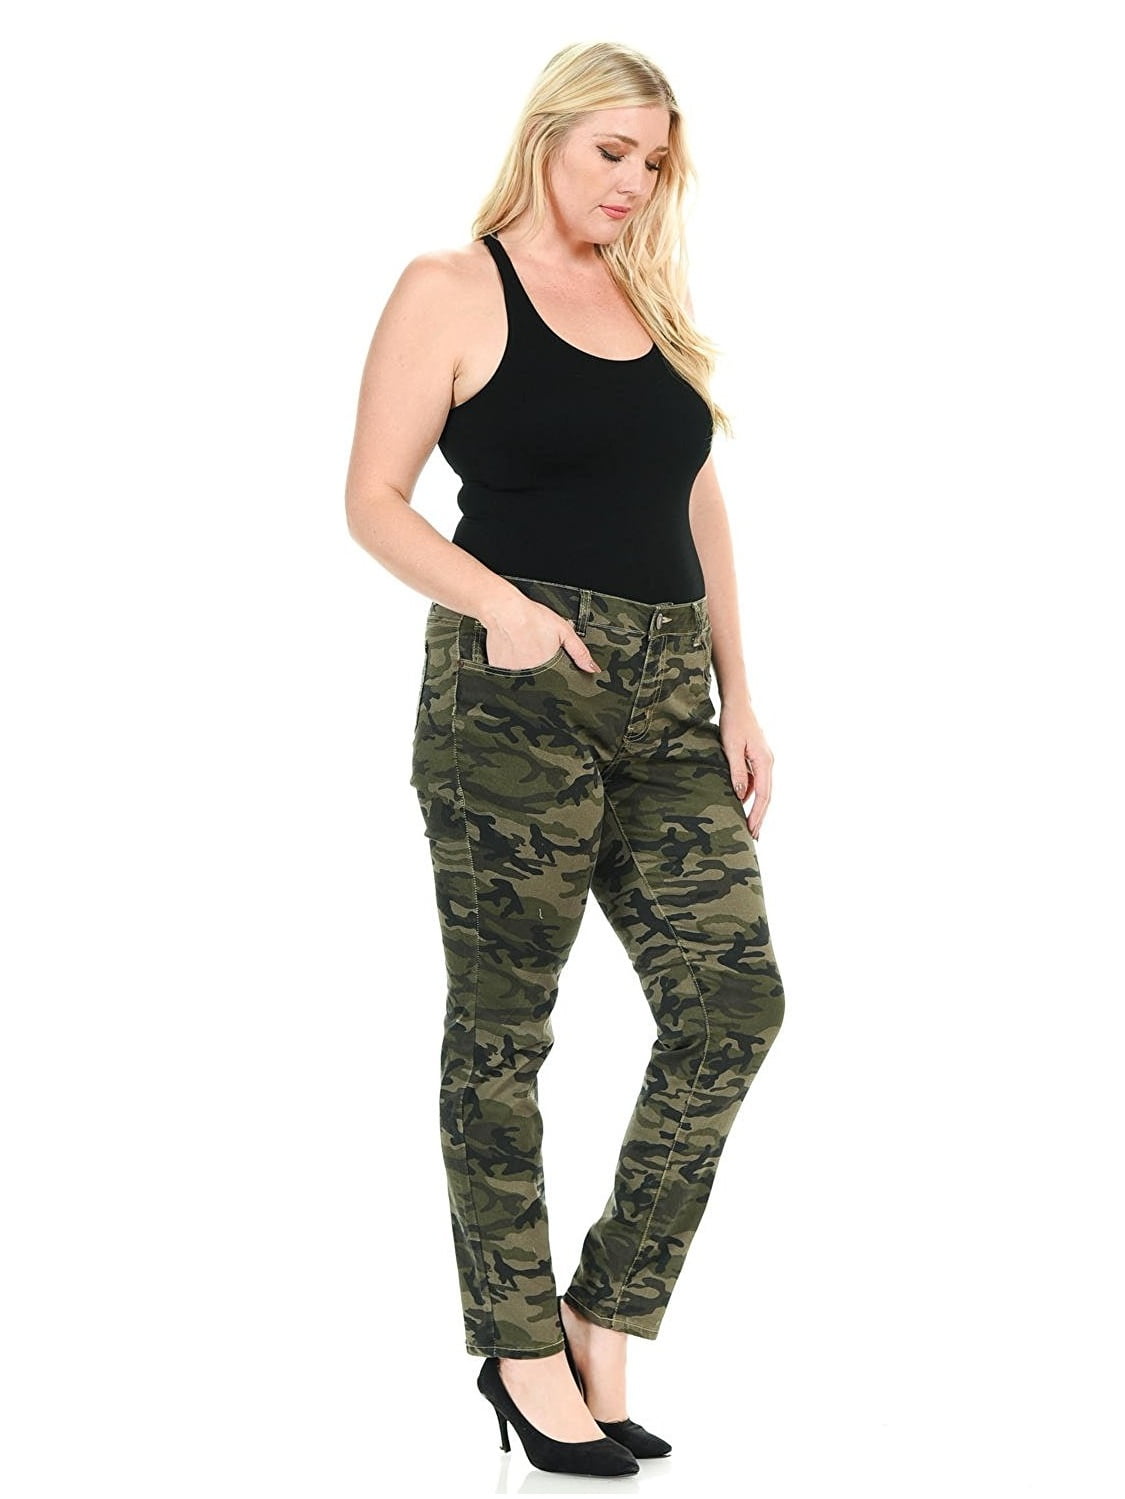 Sweet Look Womens Plus Size Stretch Jeans Army Camo Camouflage Skinny Denim Pants - Walmart.com